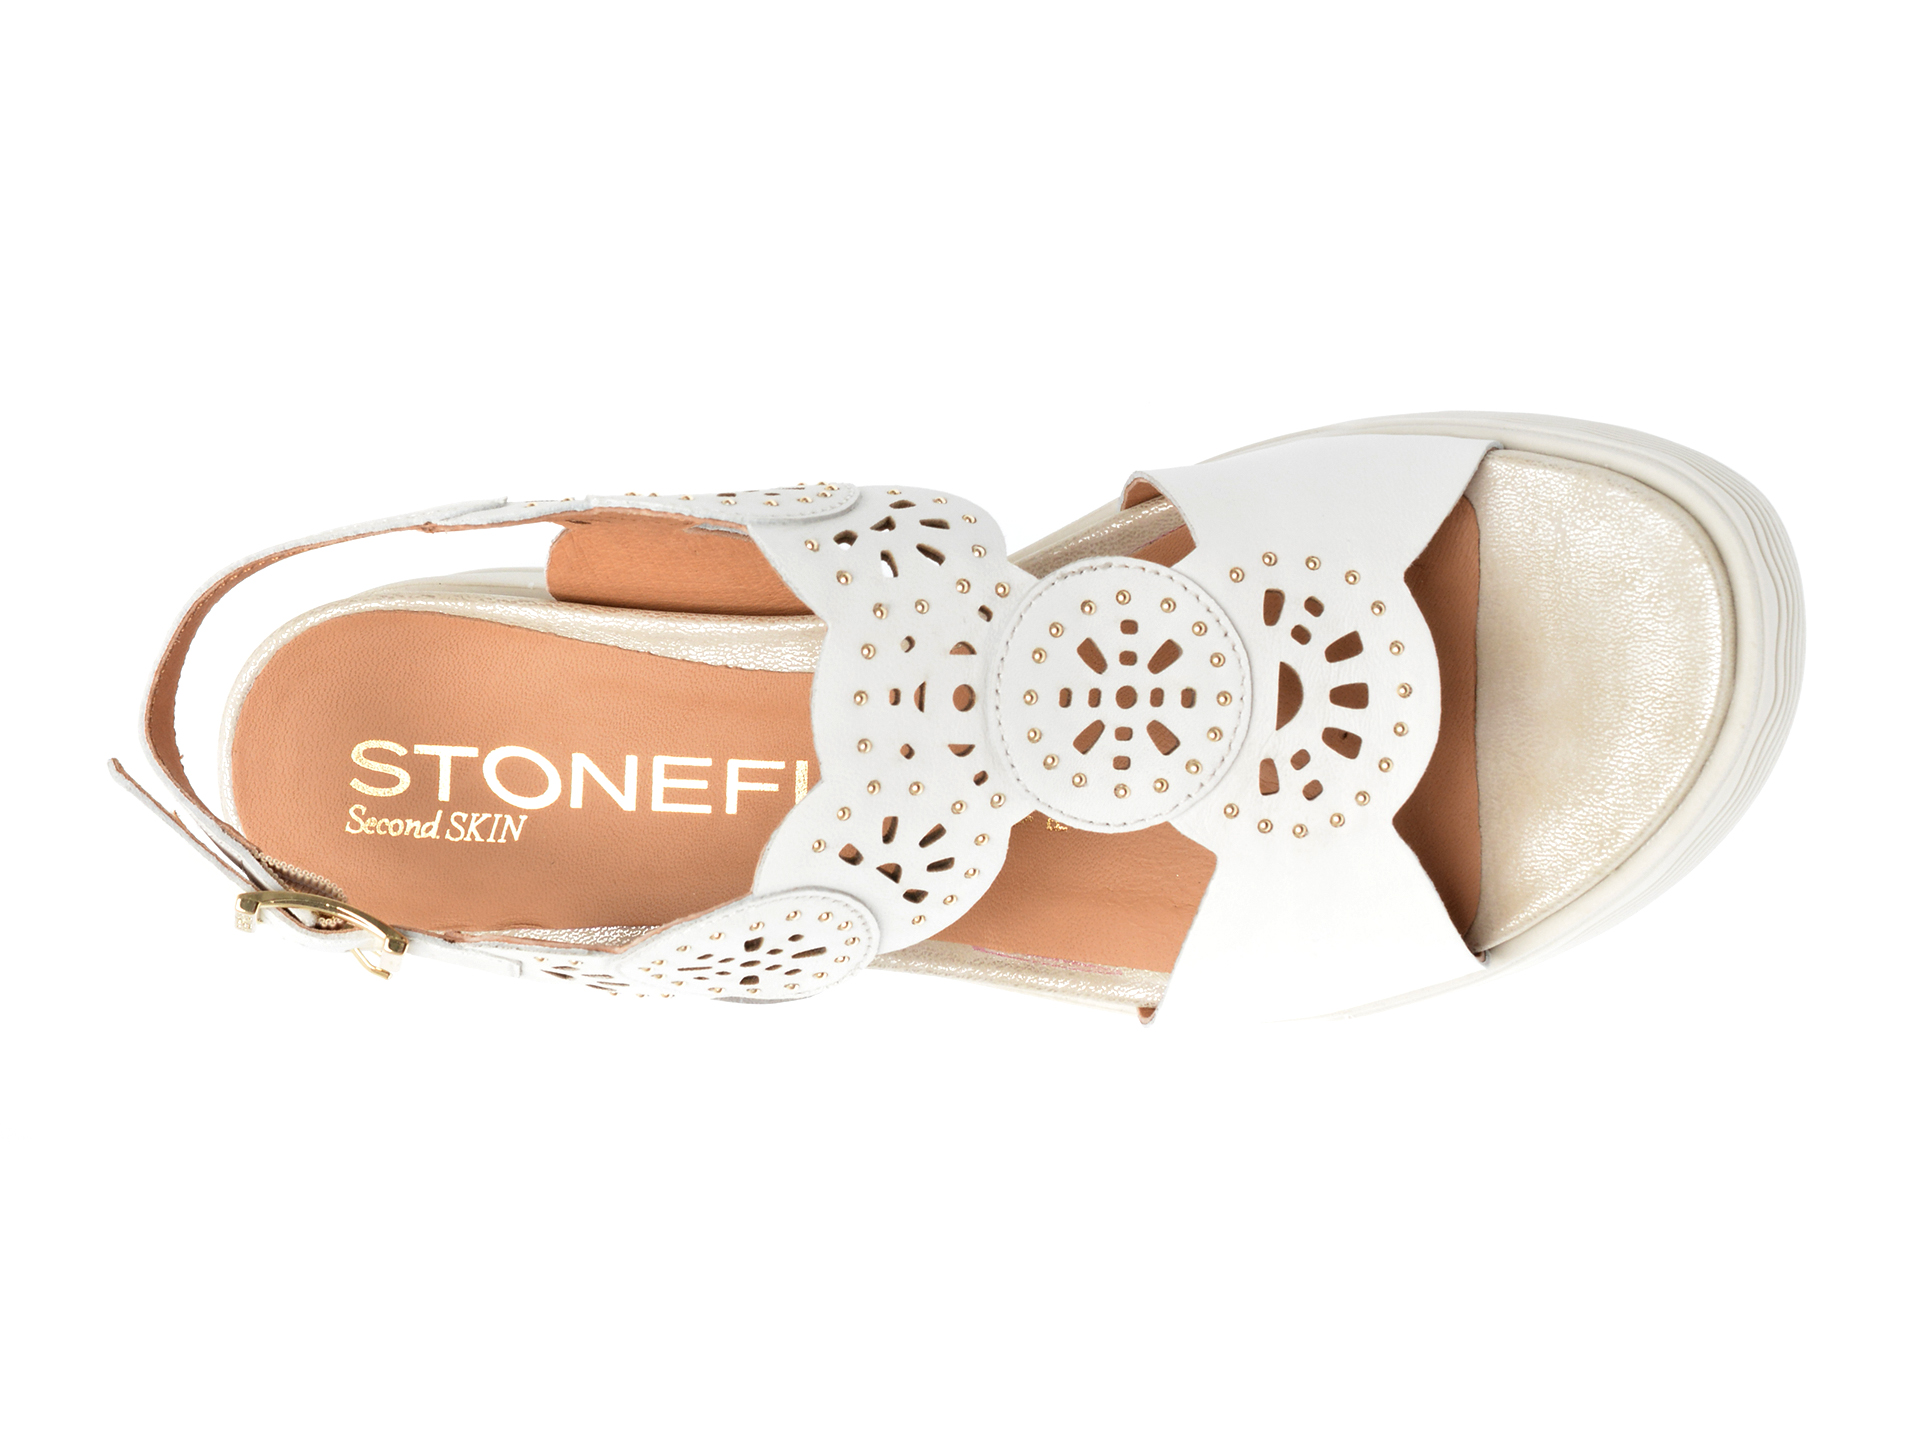 Poze Sandale STONEFLY albe, PARKY21, din piele naturala otter.ro